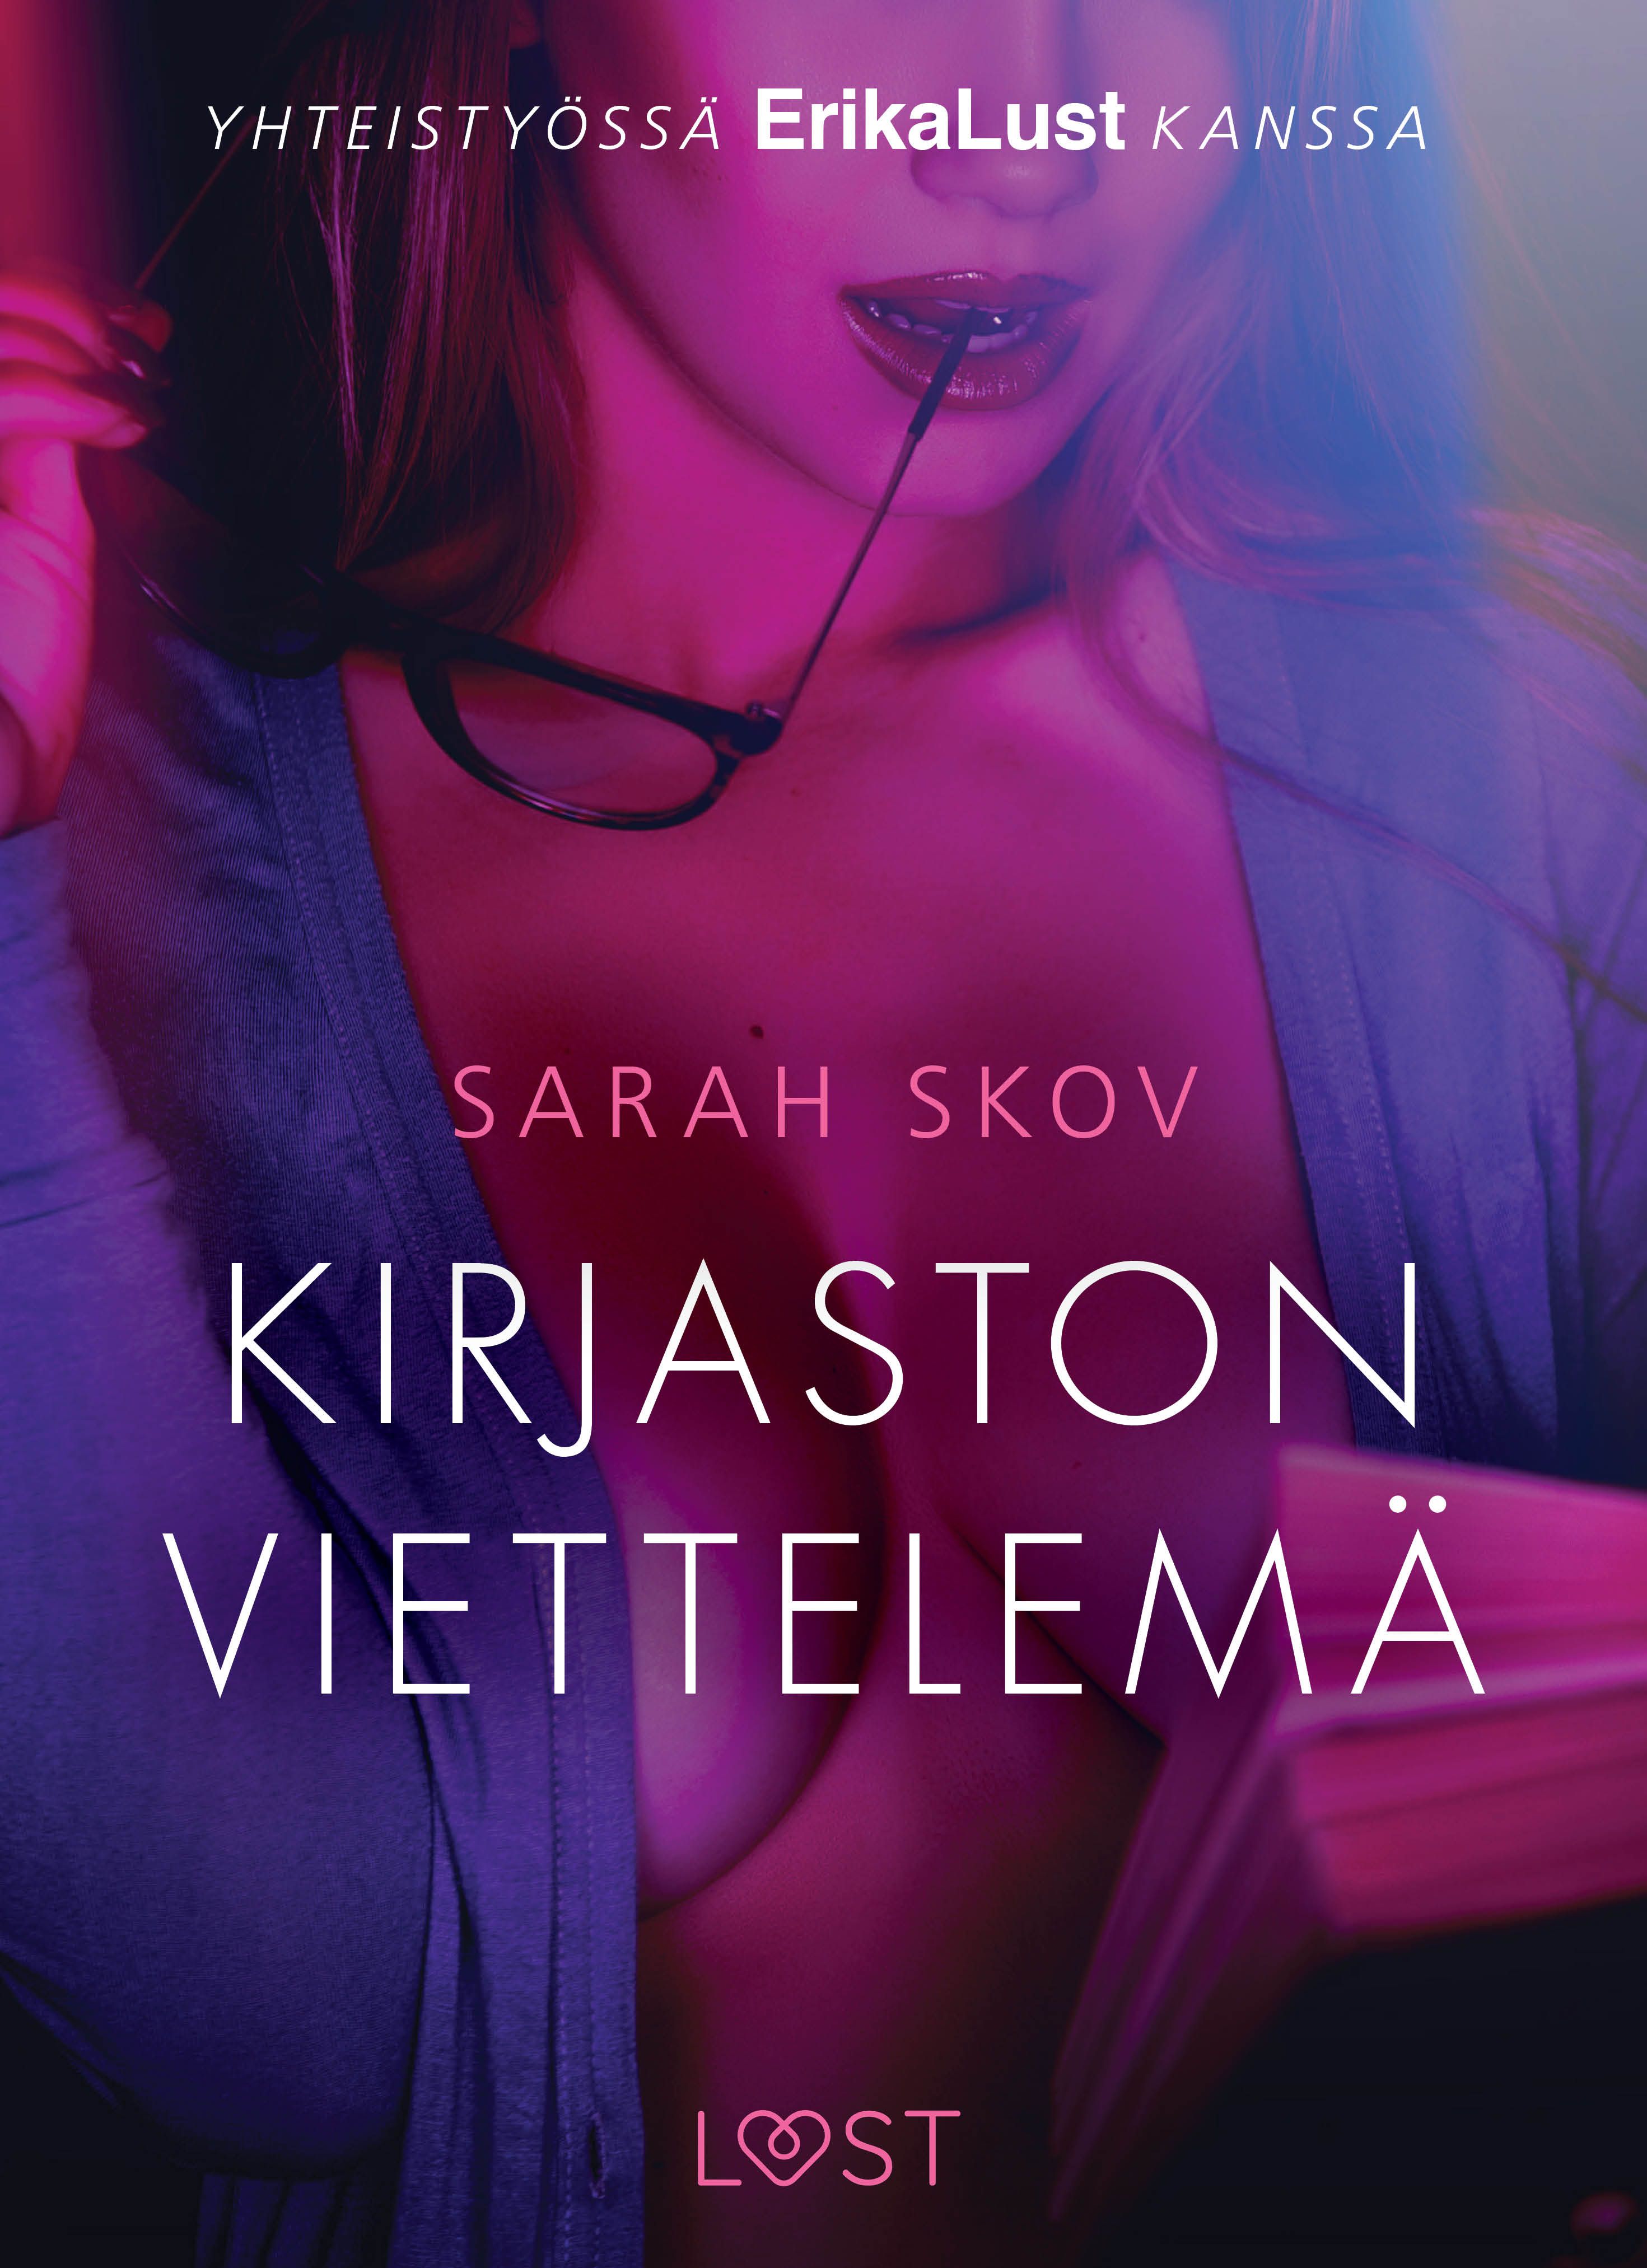 Kirjaston viettelemä - eroottinen novelli, eBook by Sarah Skov